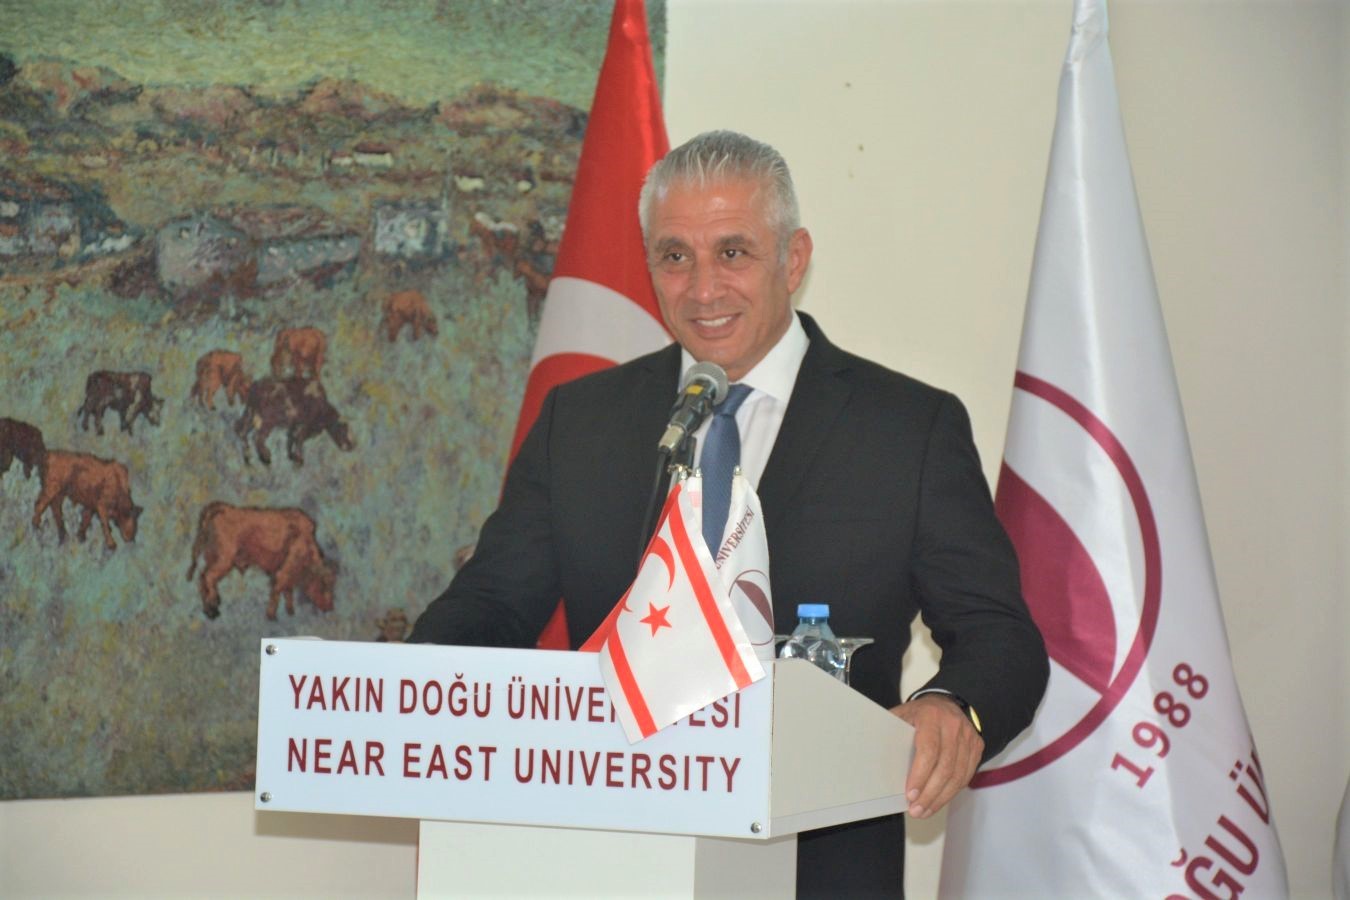 KKTC Çalışma ve Sosyal Güvenlik Bakanı Hasan Taçoy taburcu oldu